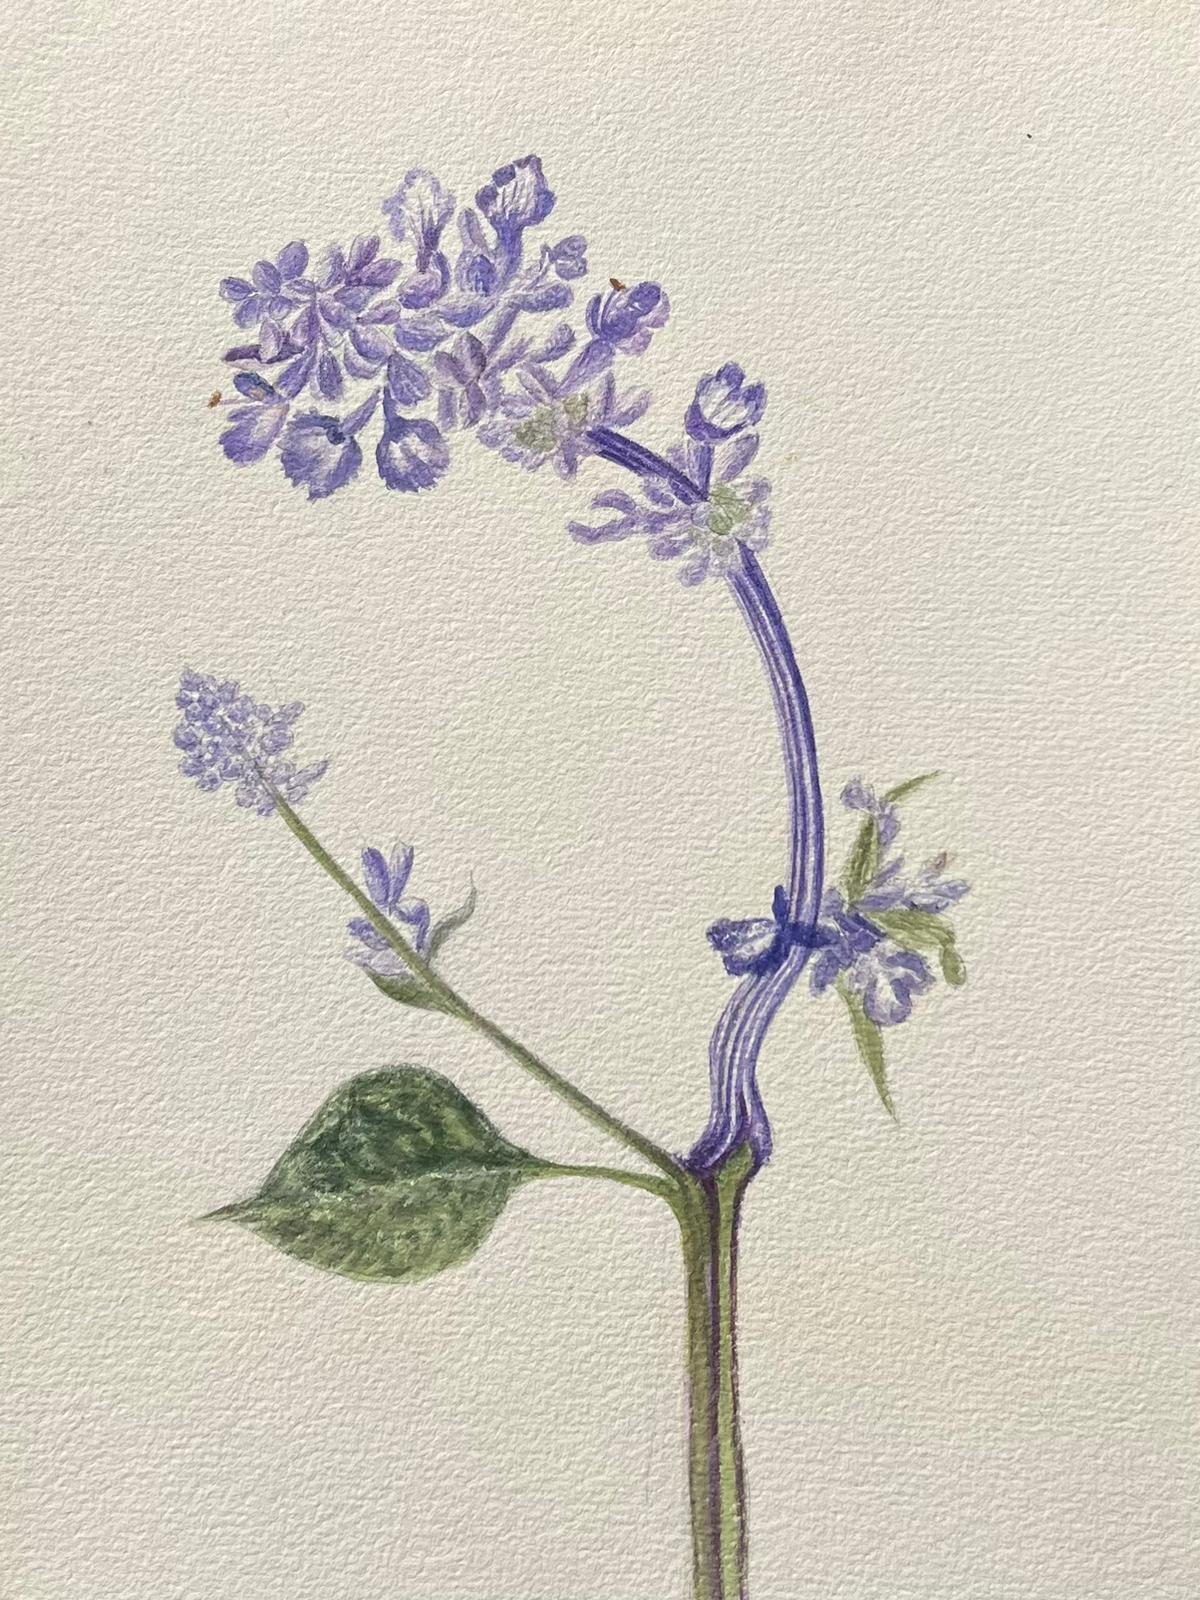 Antikes britisches botanisches Gemälde, lila Hyacinth-Blume, Hyacinth – Painting von Caroline Worsley